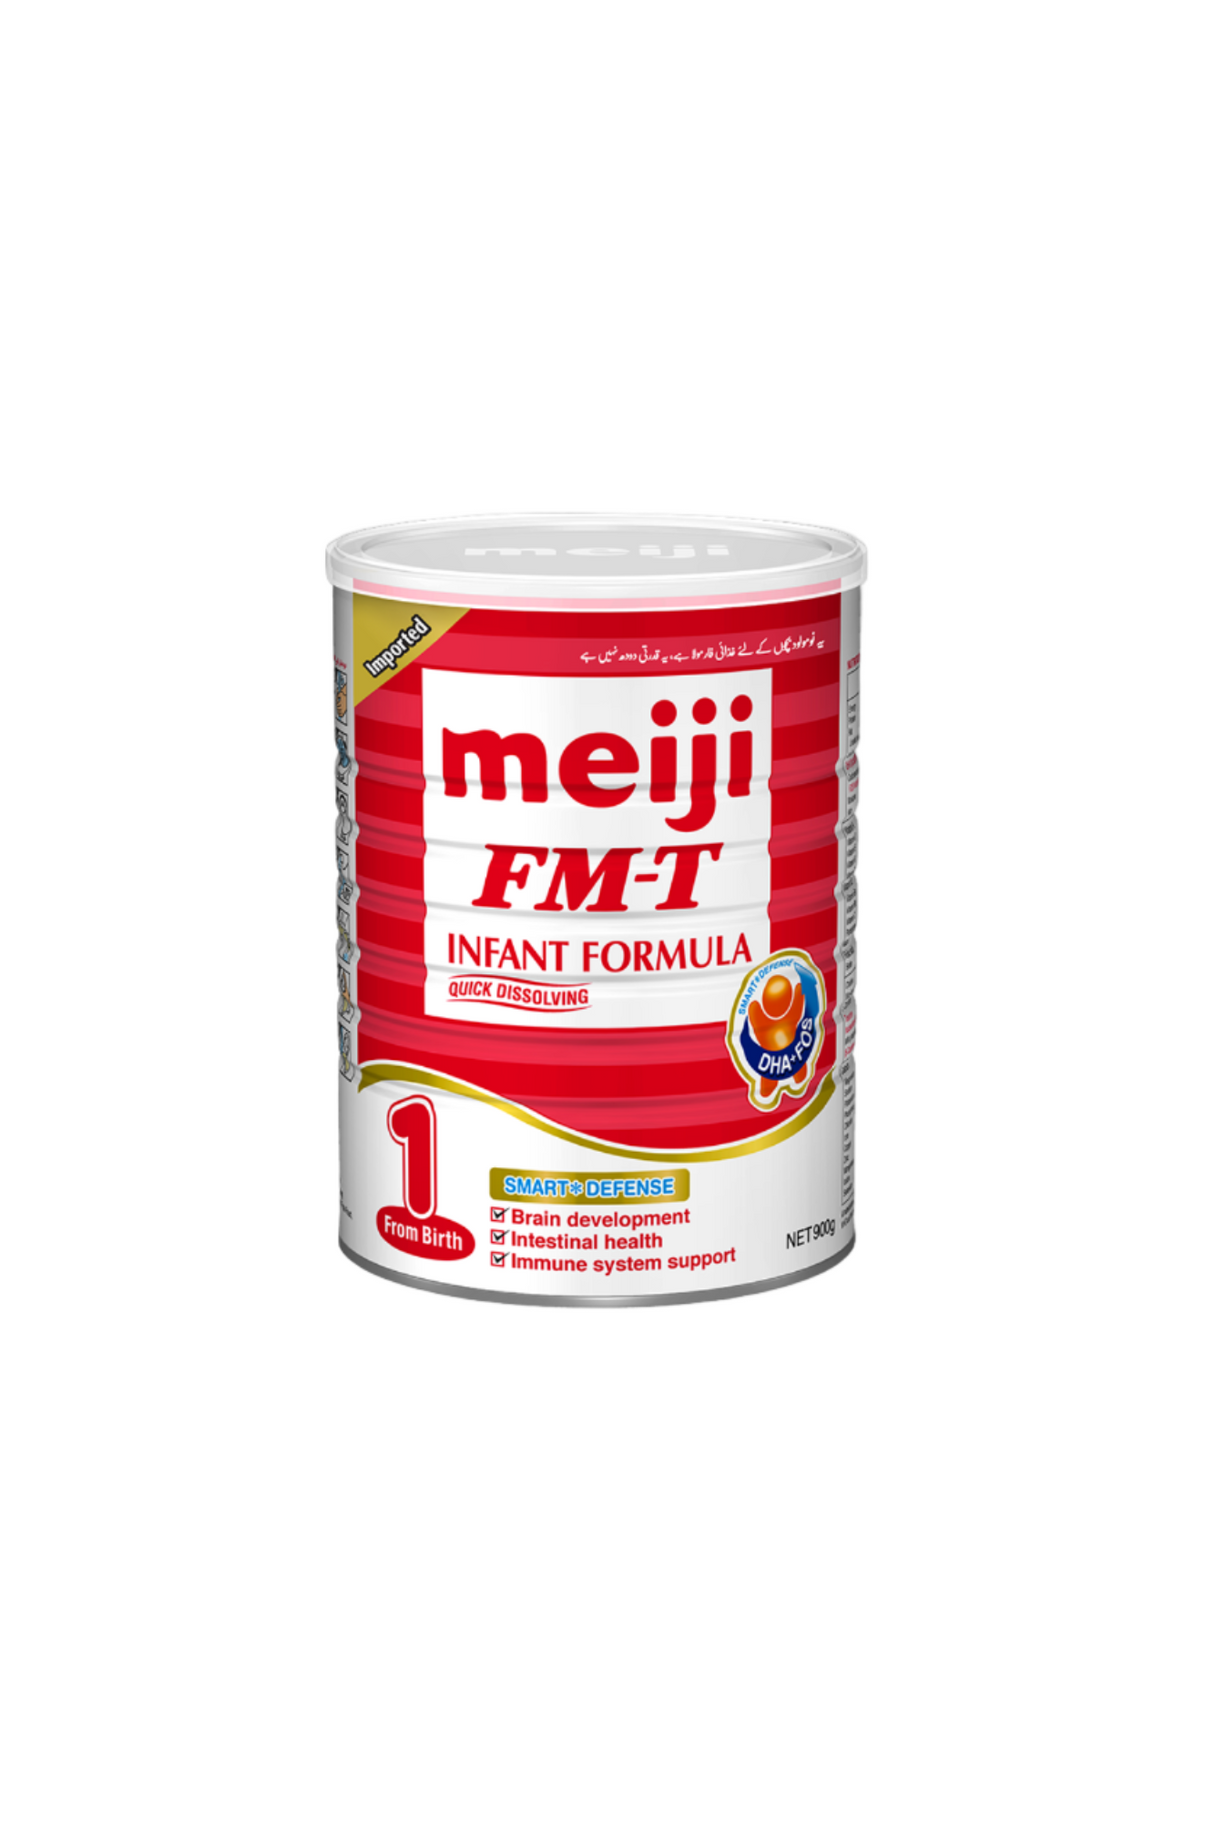 meiji milk powder fm-t 1 900g